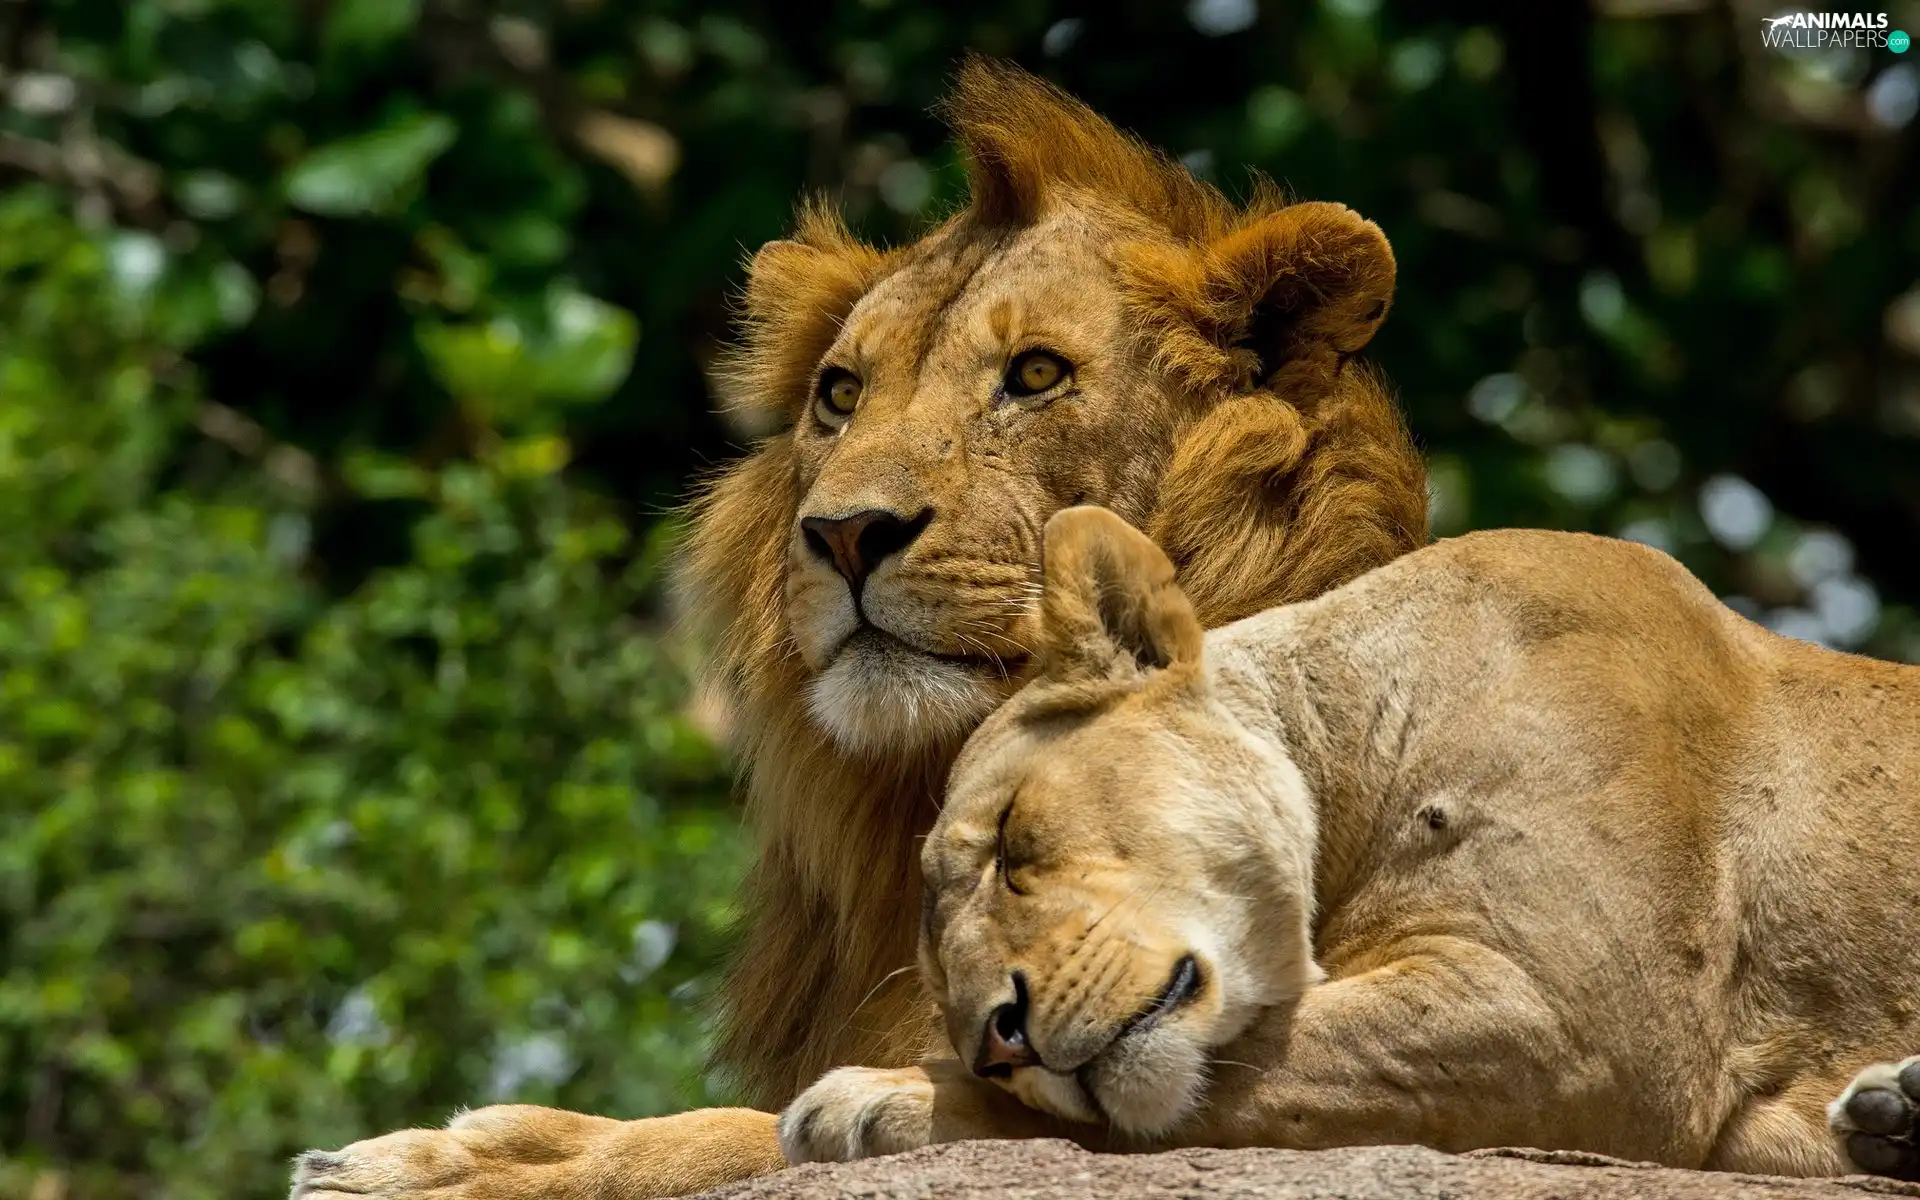 Lion, Lioness